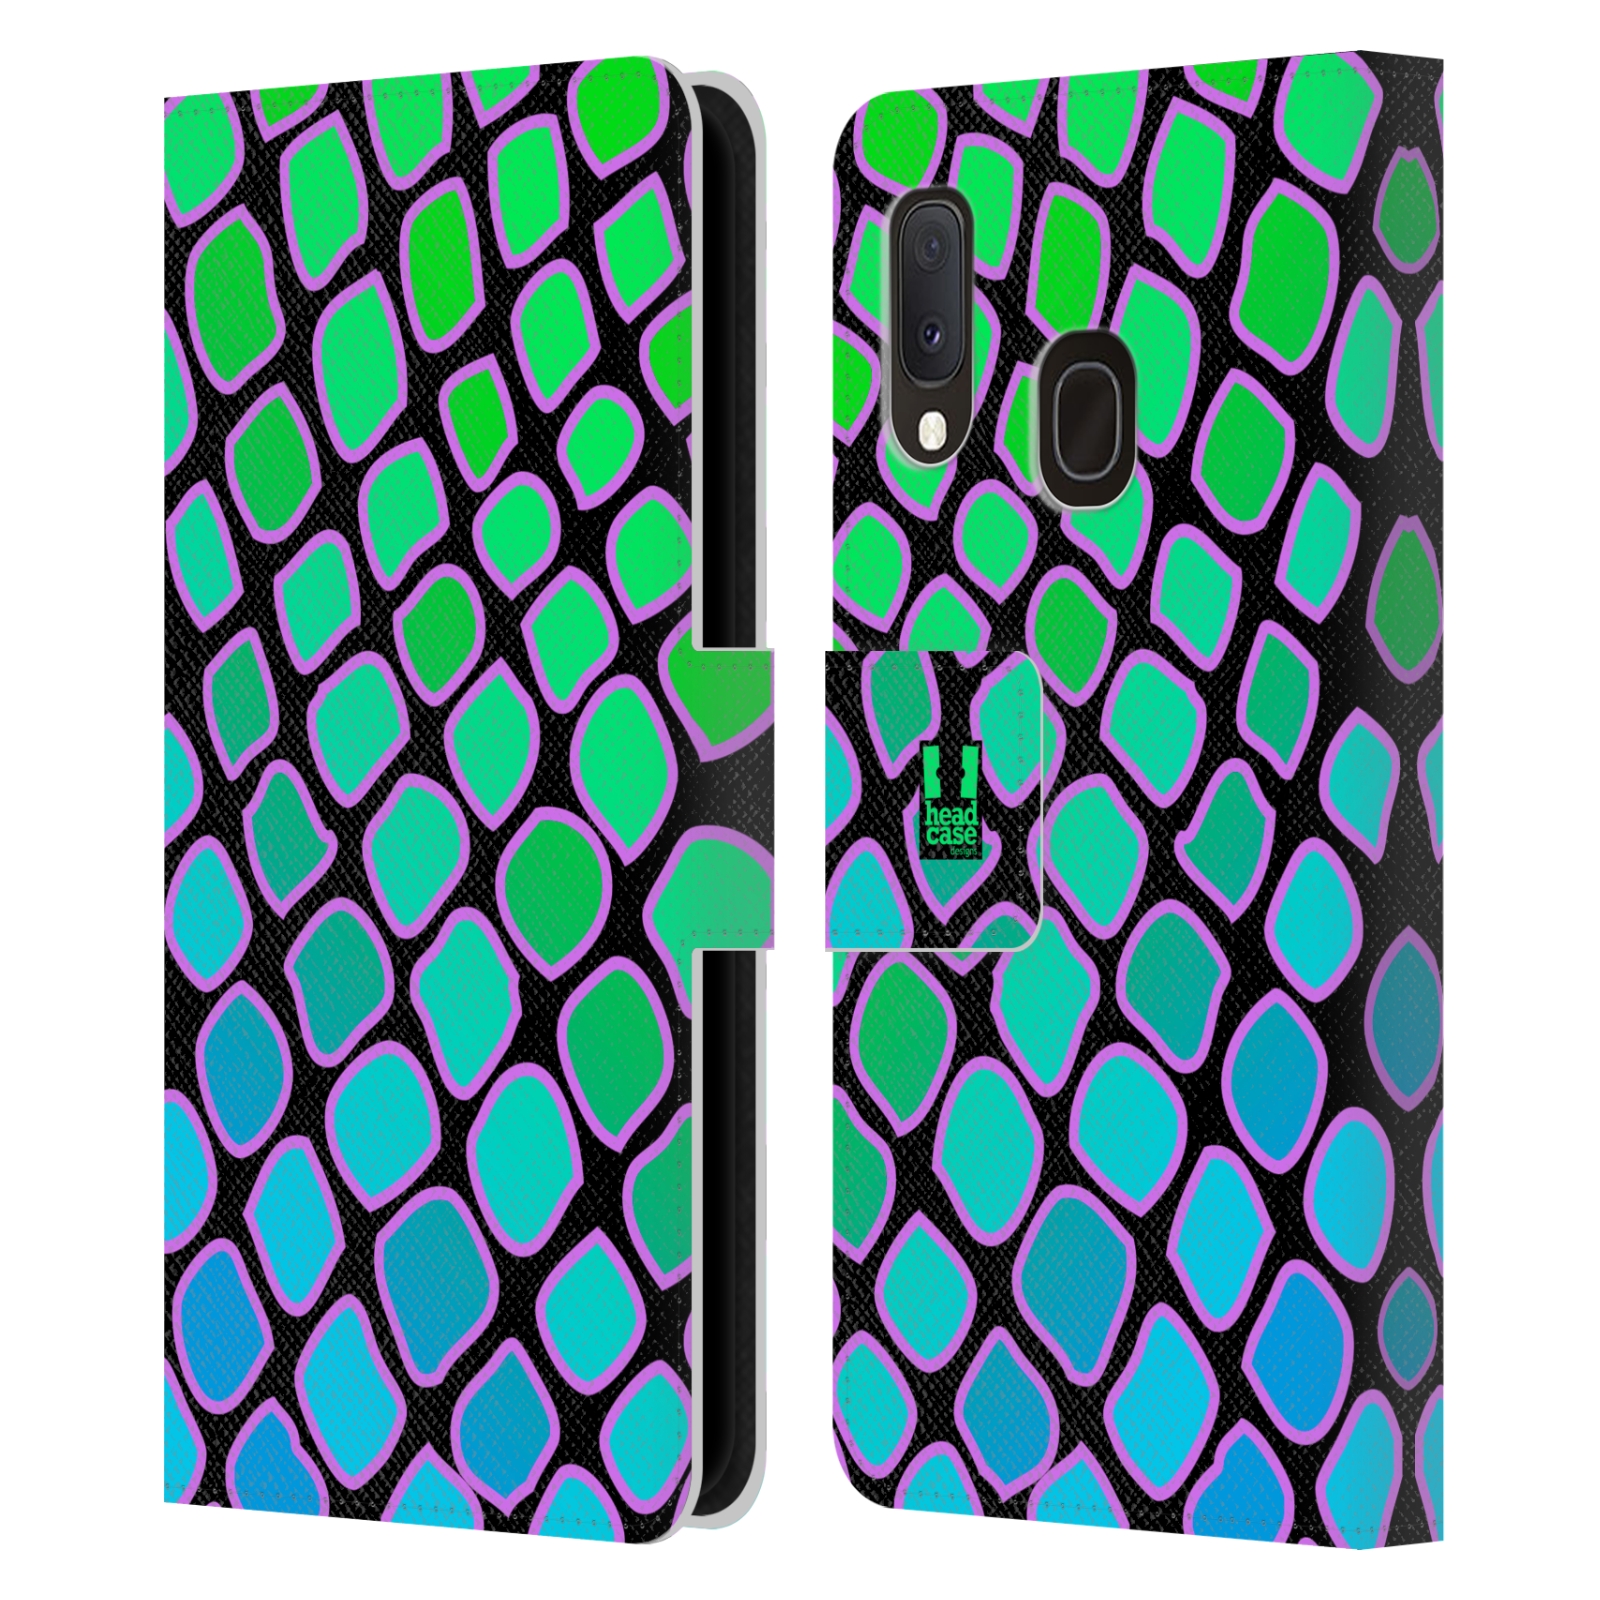 Pouzdro na mobil Samsung Galaxy A20e Zvířecí barevné vzory vodní had modrá a zelená barva AQUA